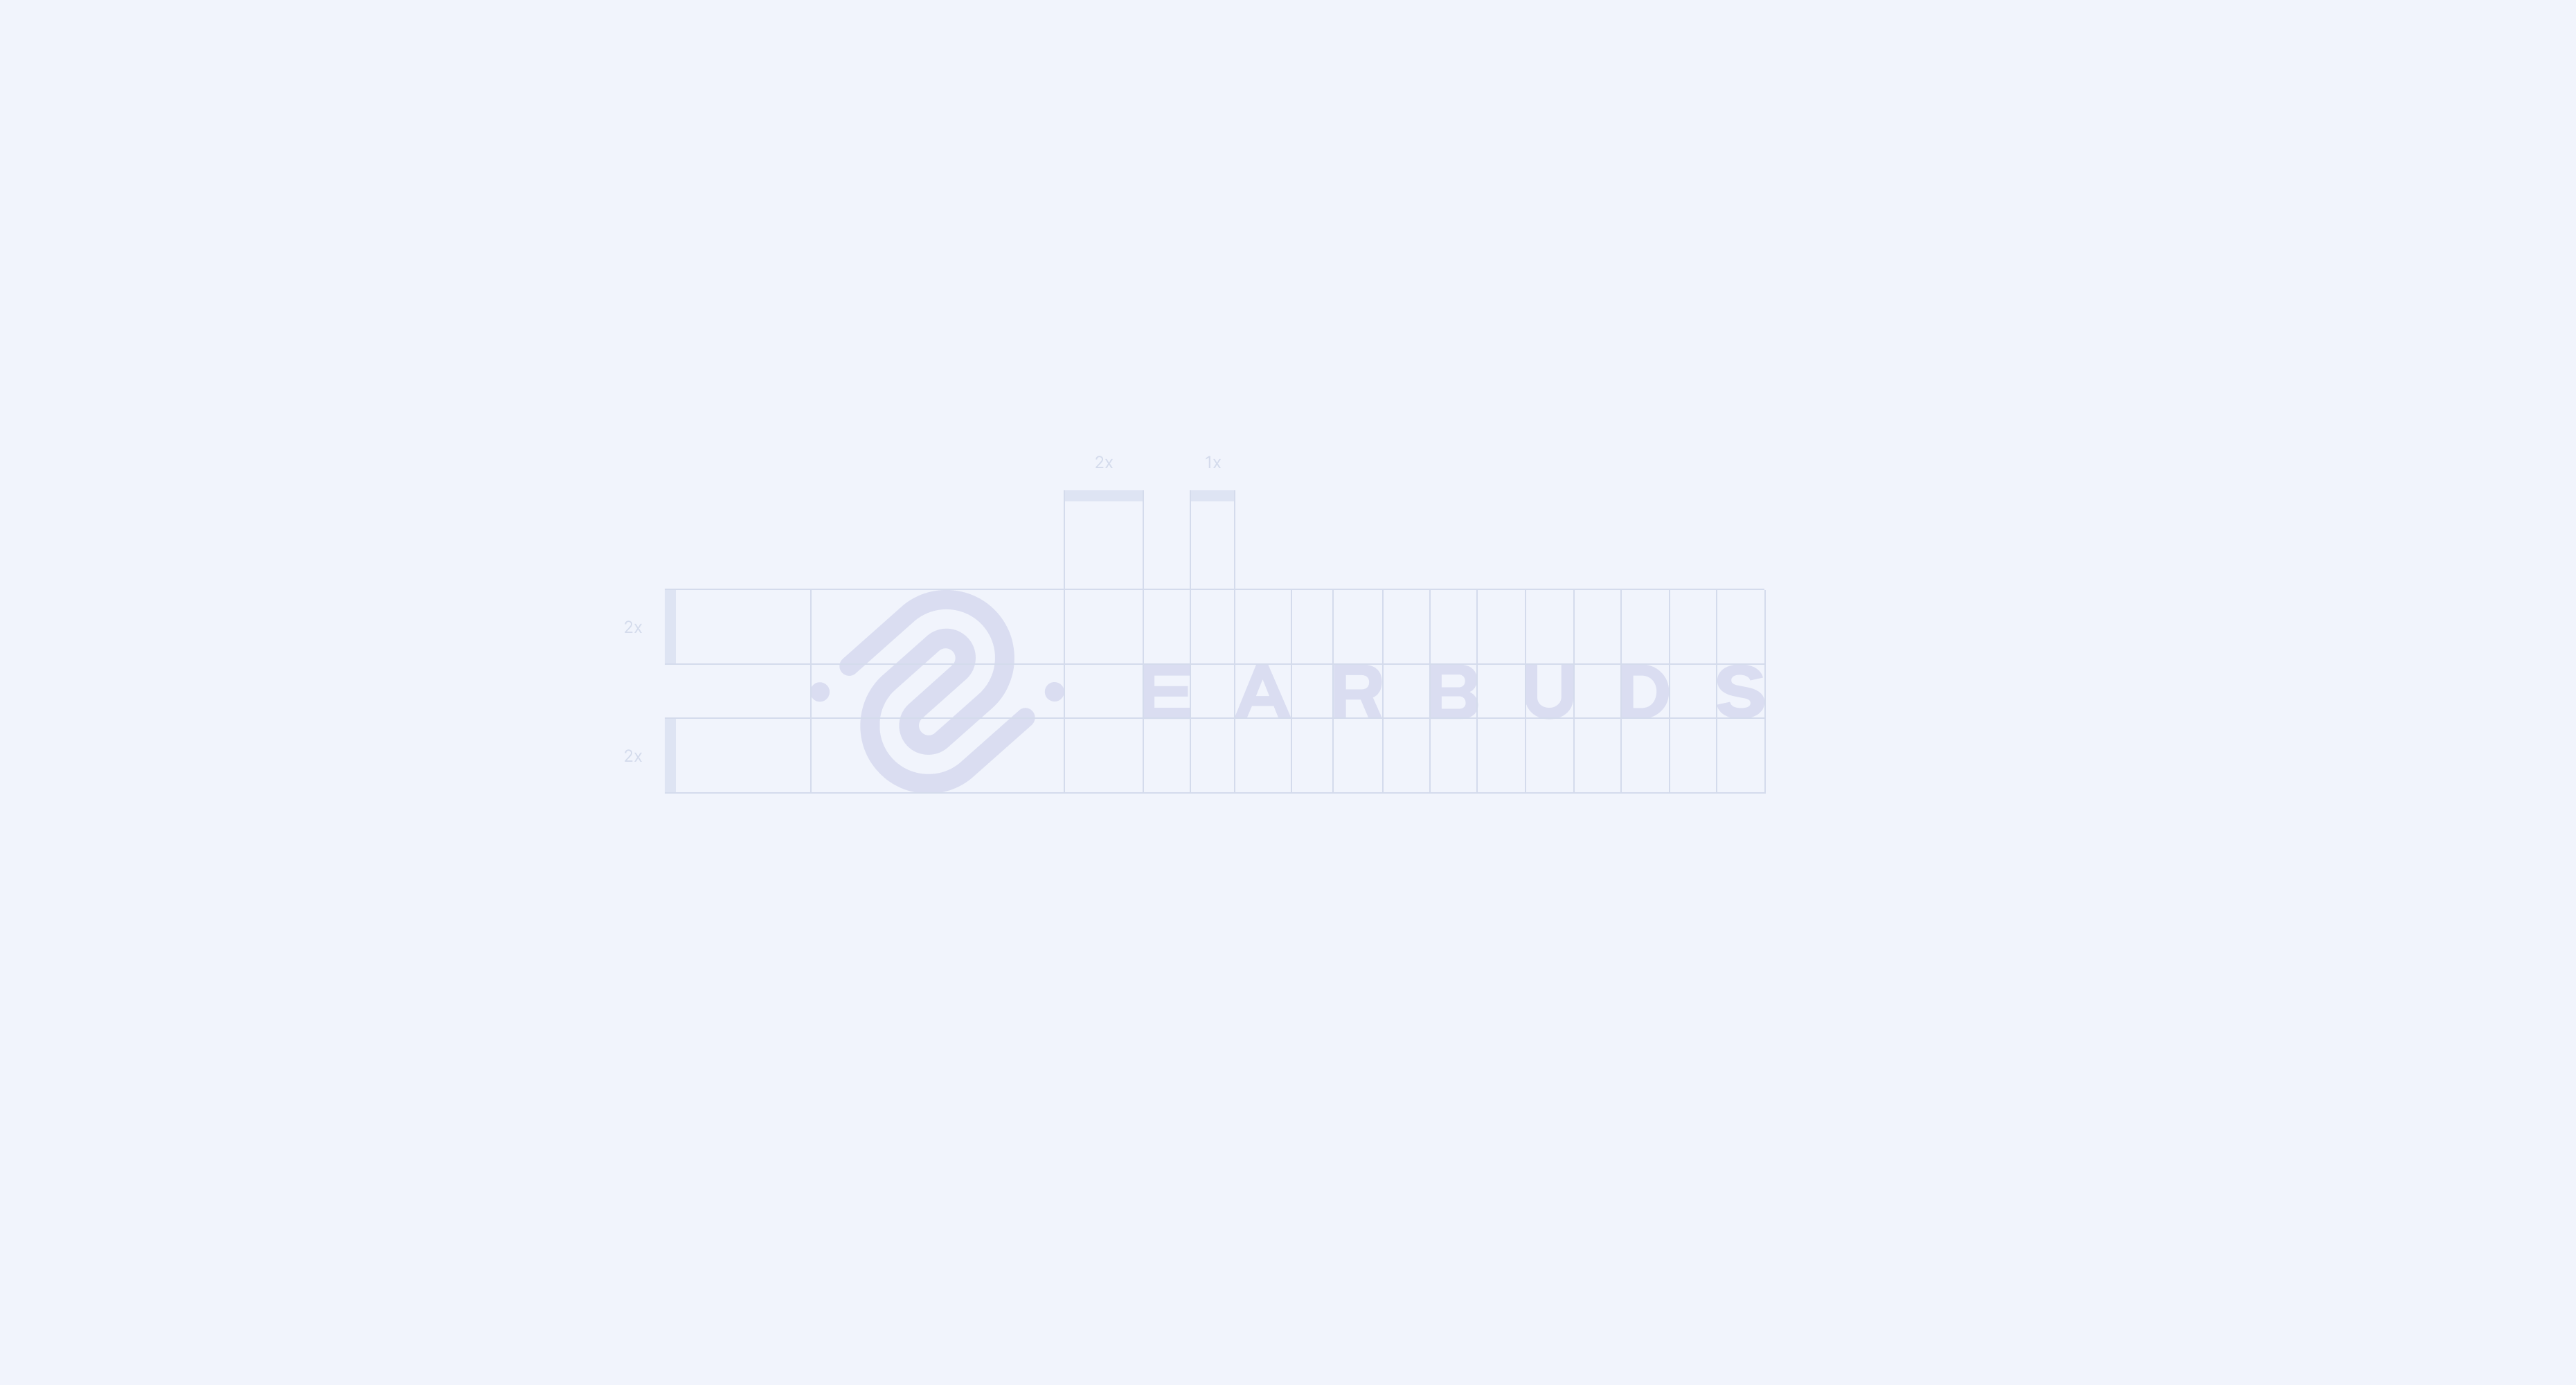 EarBuds Wordmark Grid